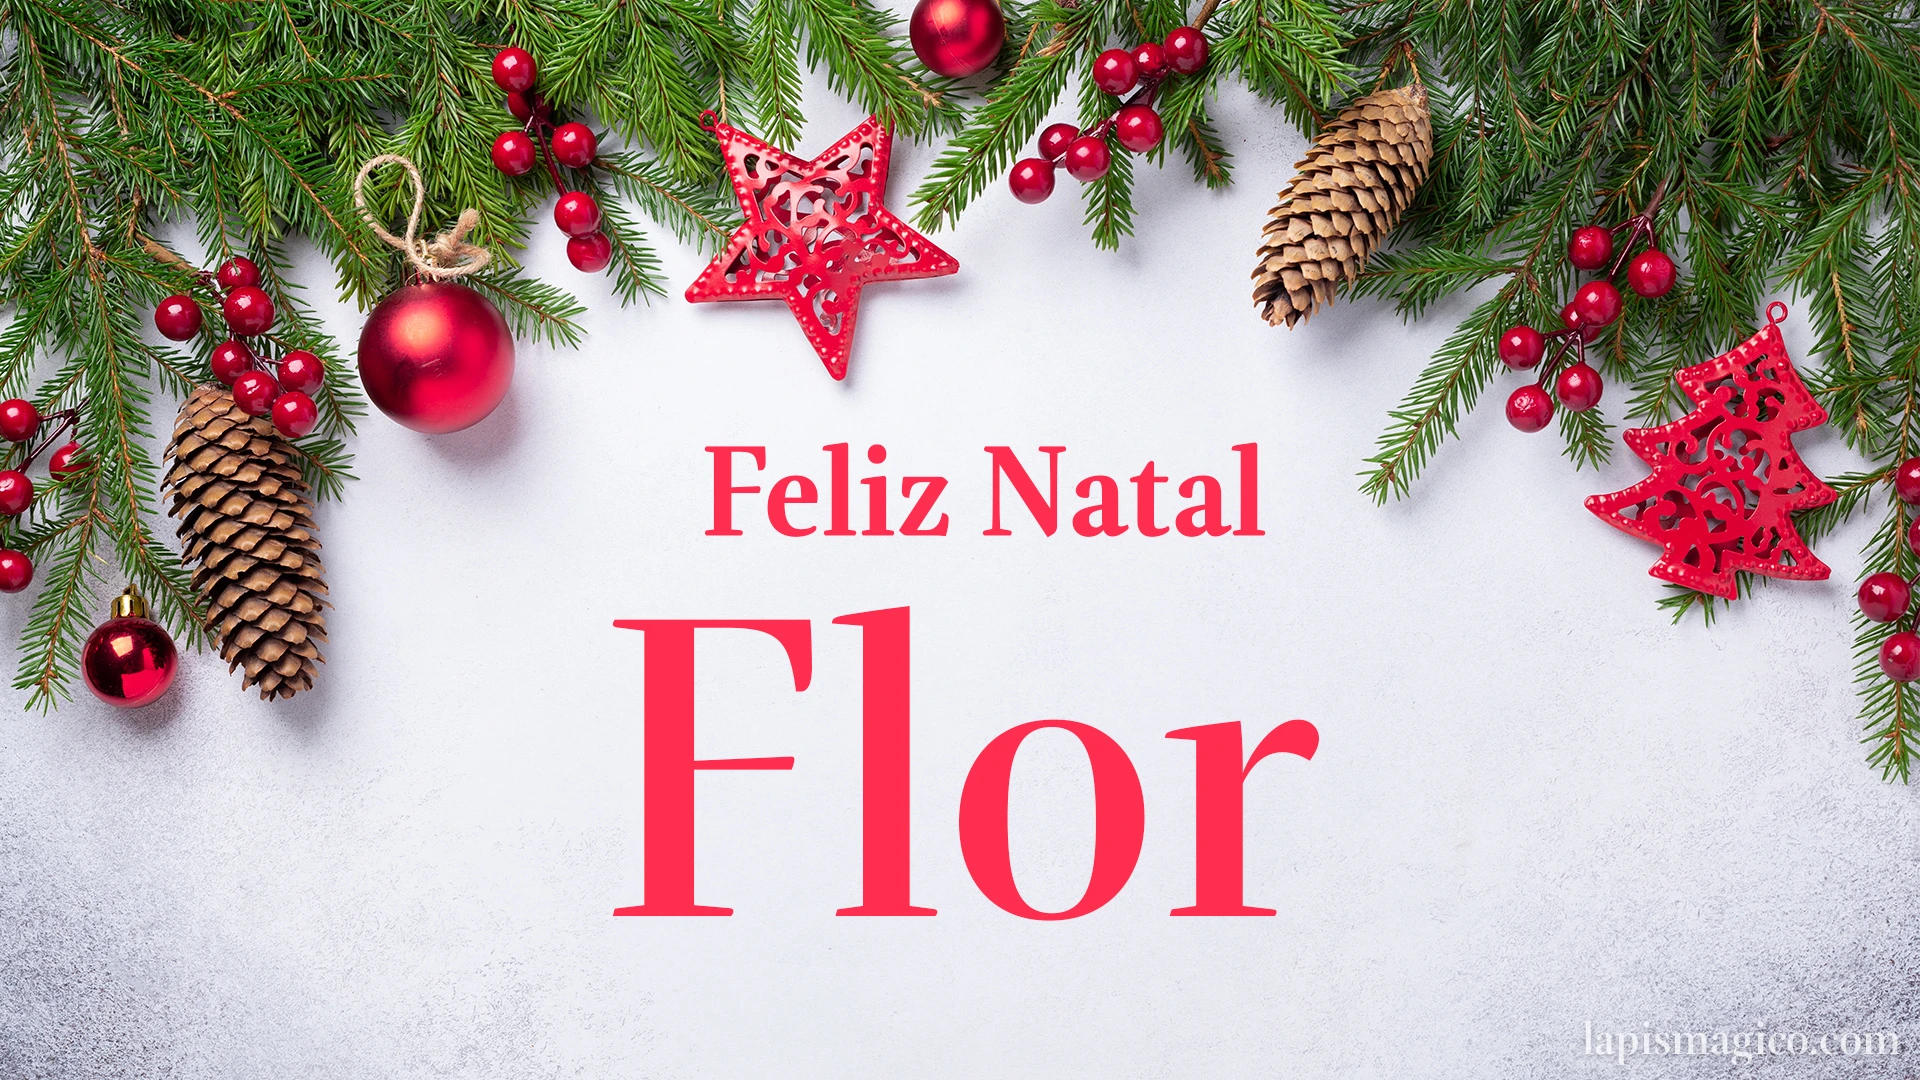 Oh Flor, cinco postais de Feliz Natal Postal com o teu nome